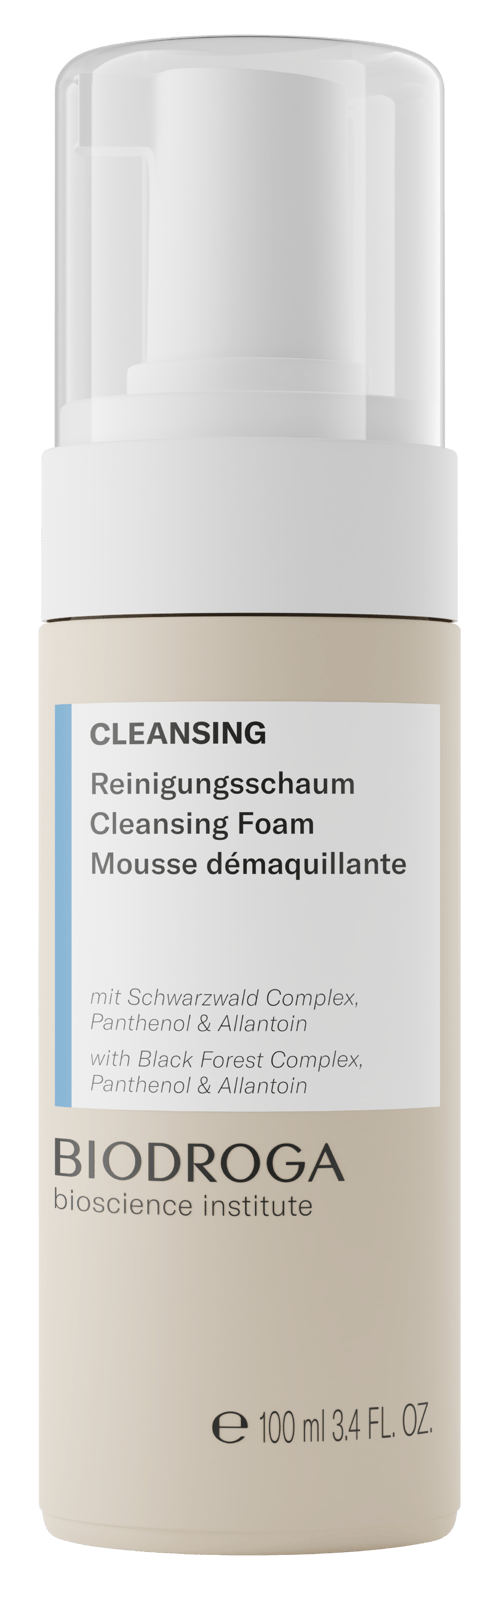 CLEANSING Reinigungsschaum